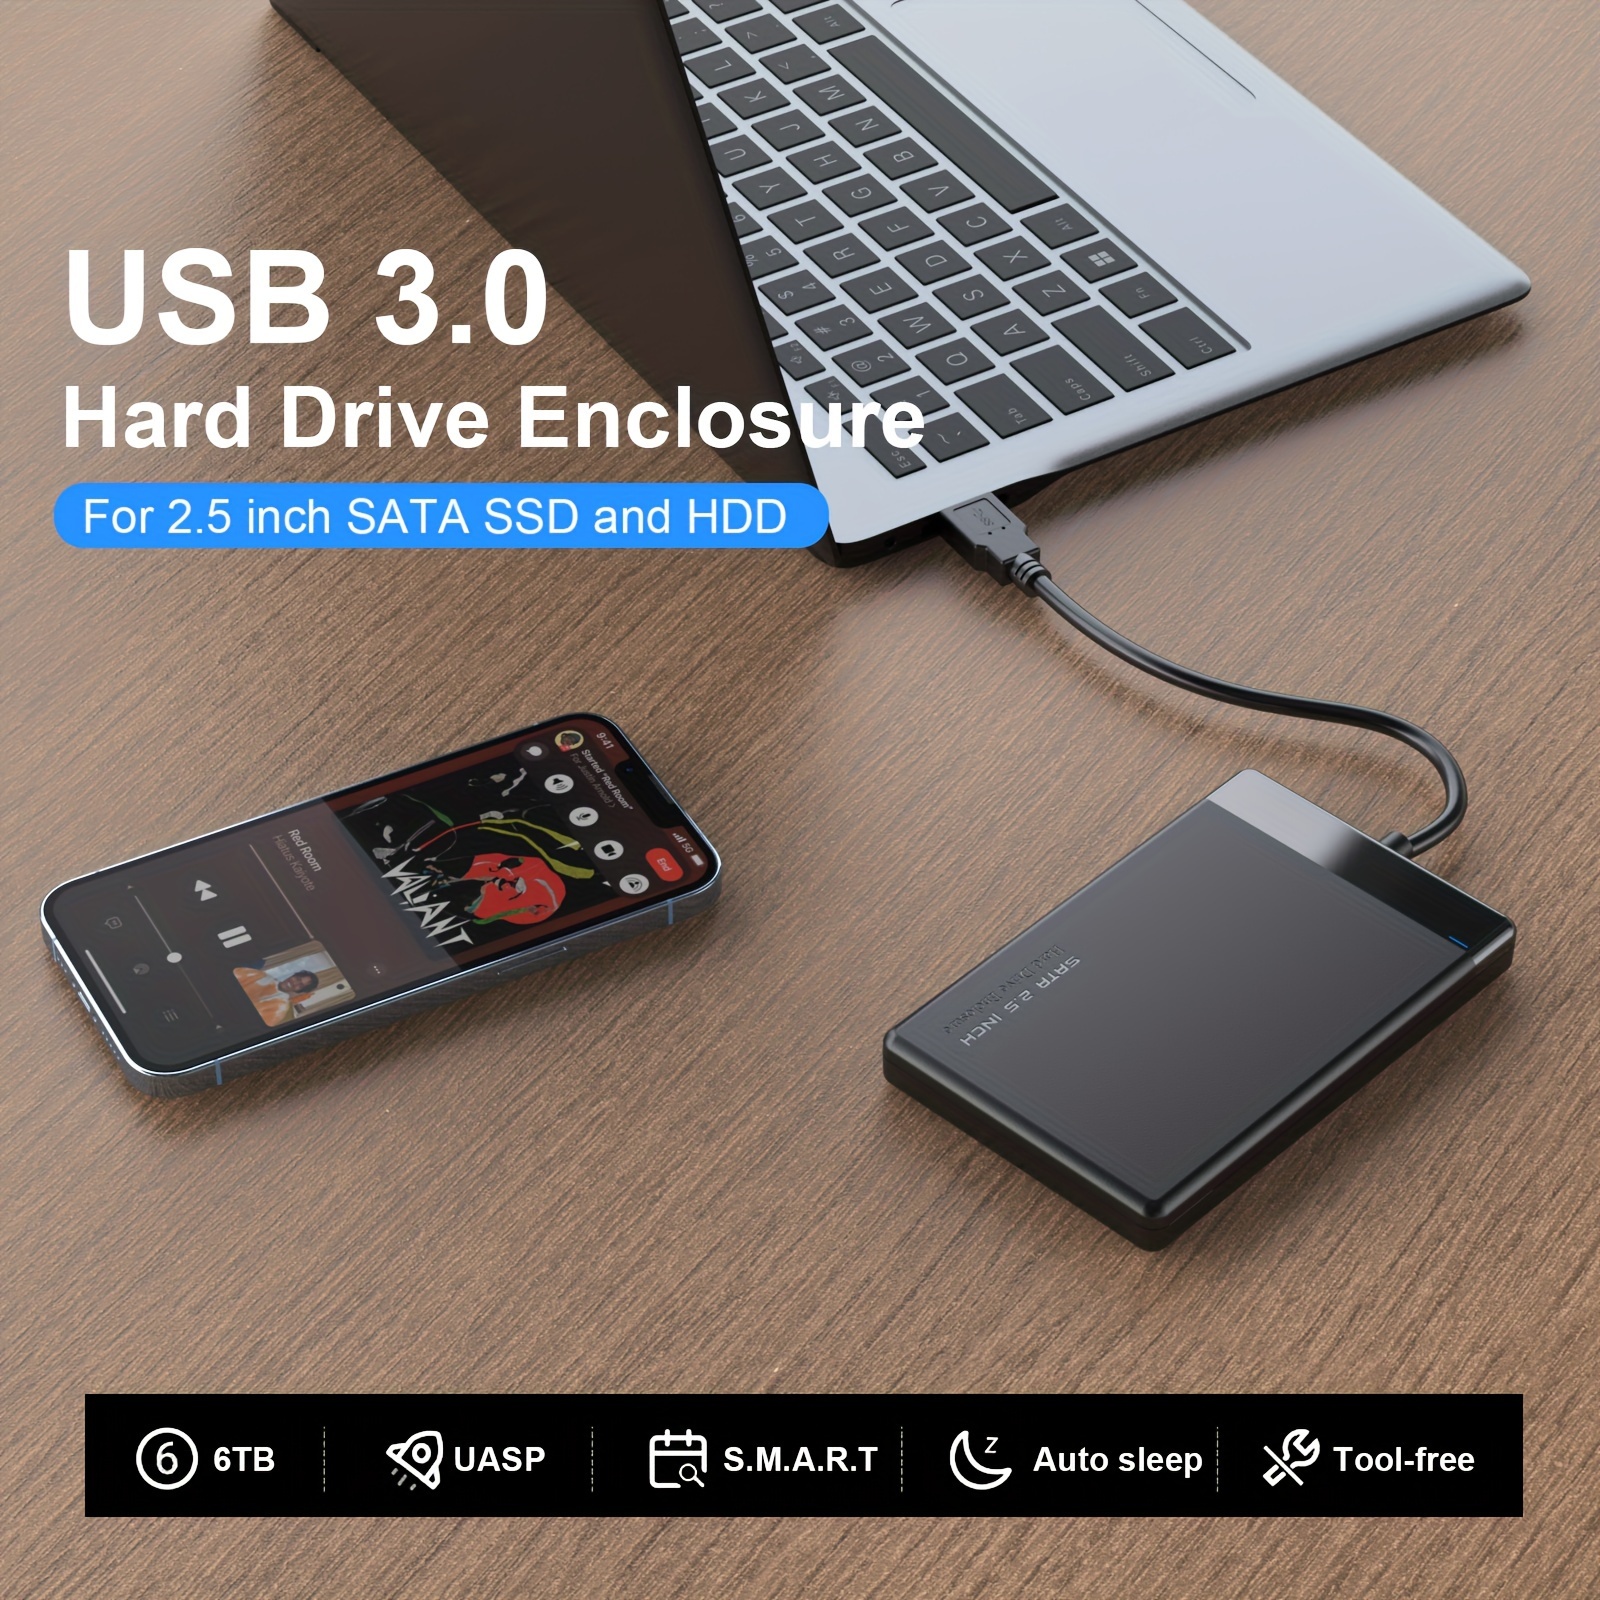 Disque Dur Externe 6 To Wifi sans fil 3.5'' USB 3.0 HDD Aluminium